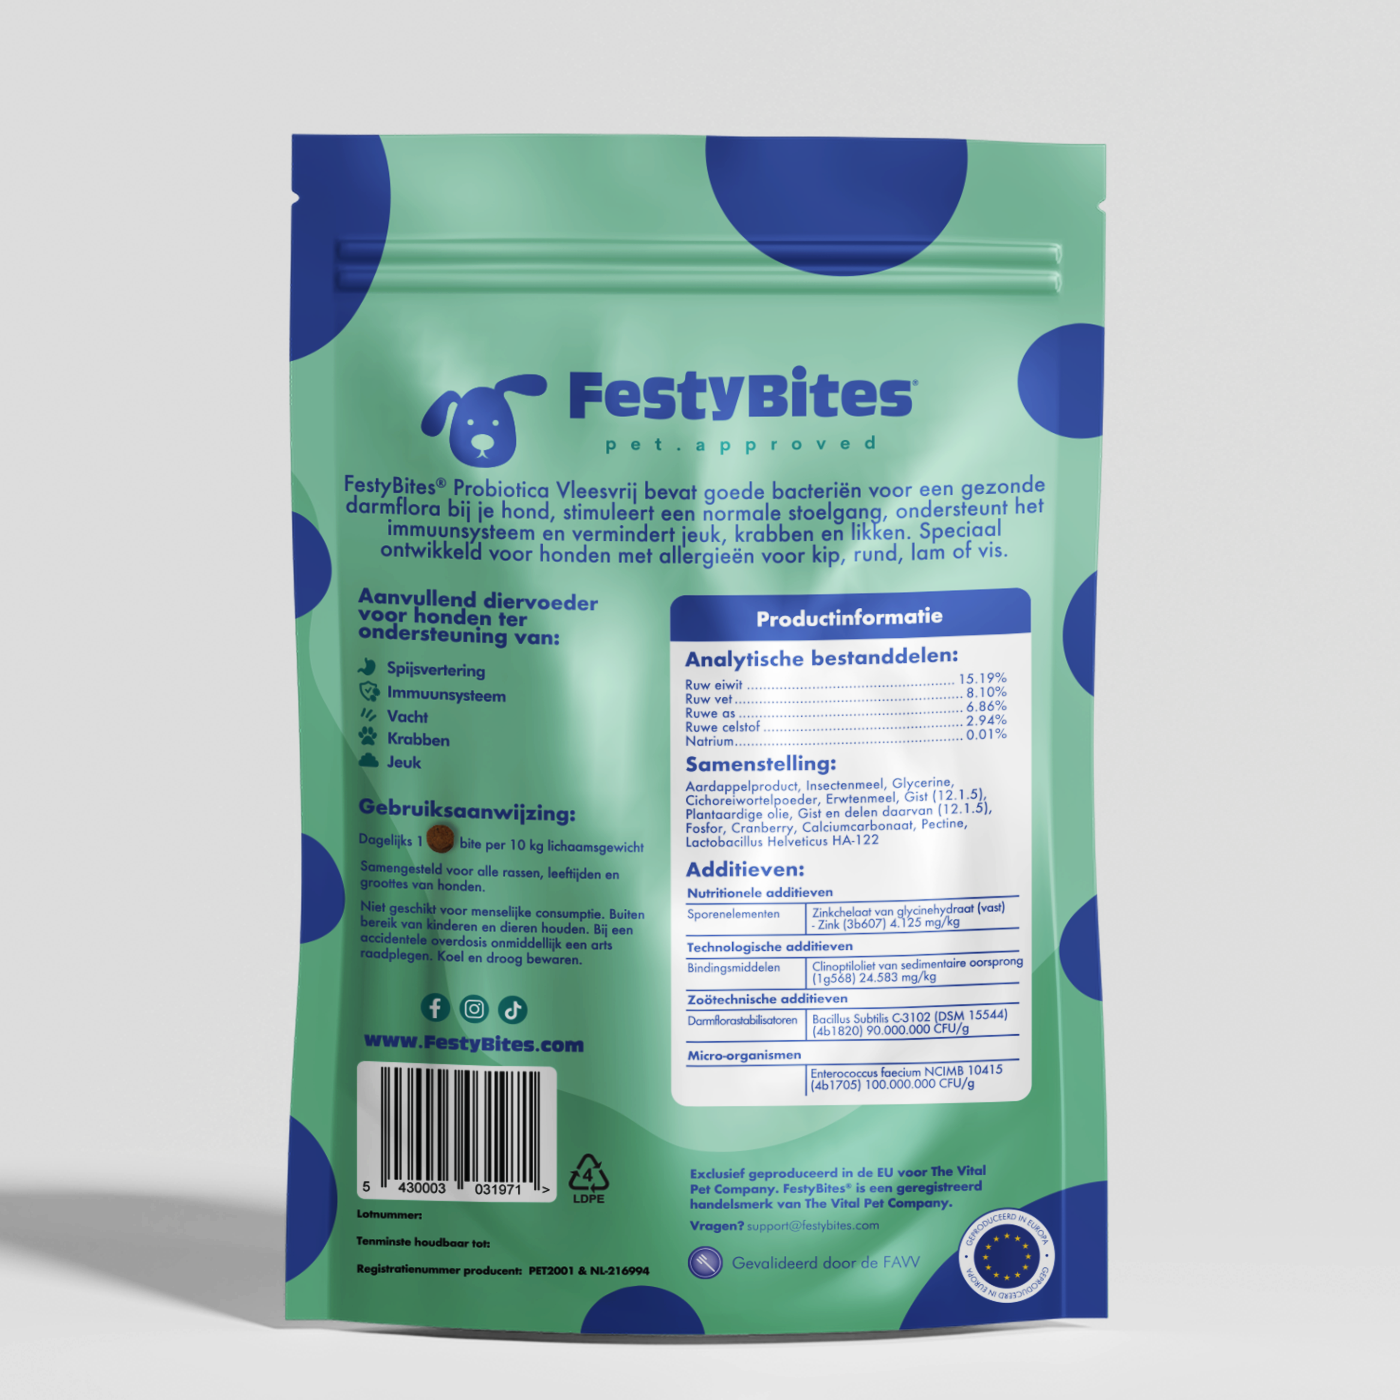 FestyBites® Probiotica Vleesvrij: zorgvuldige mix met Lactobacillus Helveticus, Bacillus Subtilis, Enterococcus faecium, Prebiotica zoals Cichoreiwortelpoeder, en Erwtenmeel.